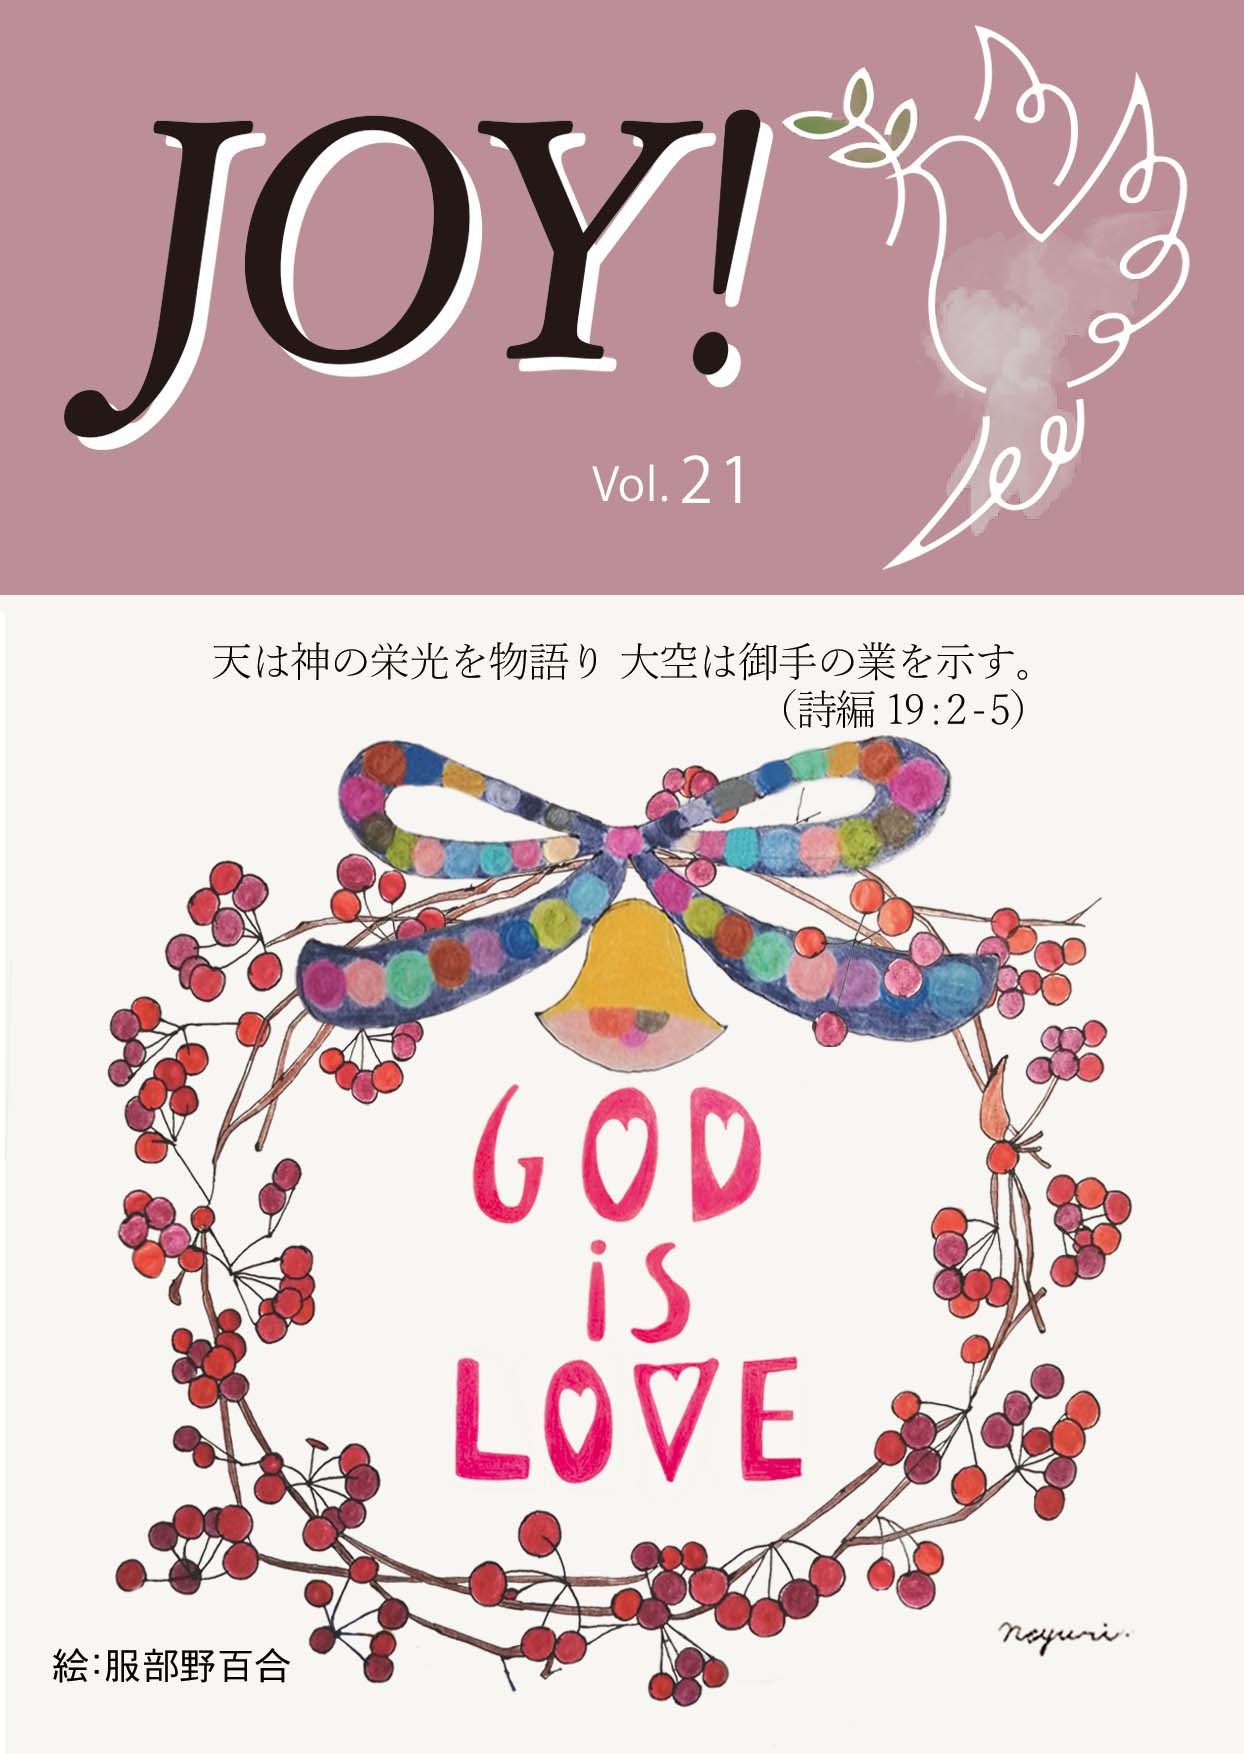 季刊紙 『JOY!』冬号配布中(Vol.21)